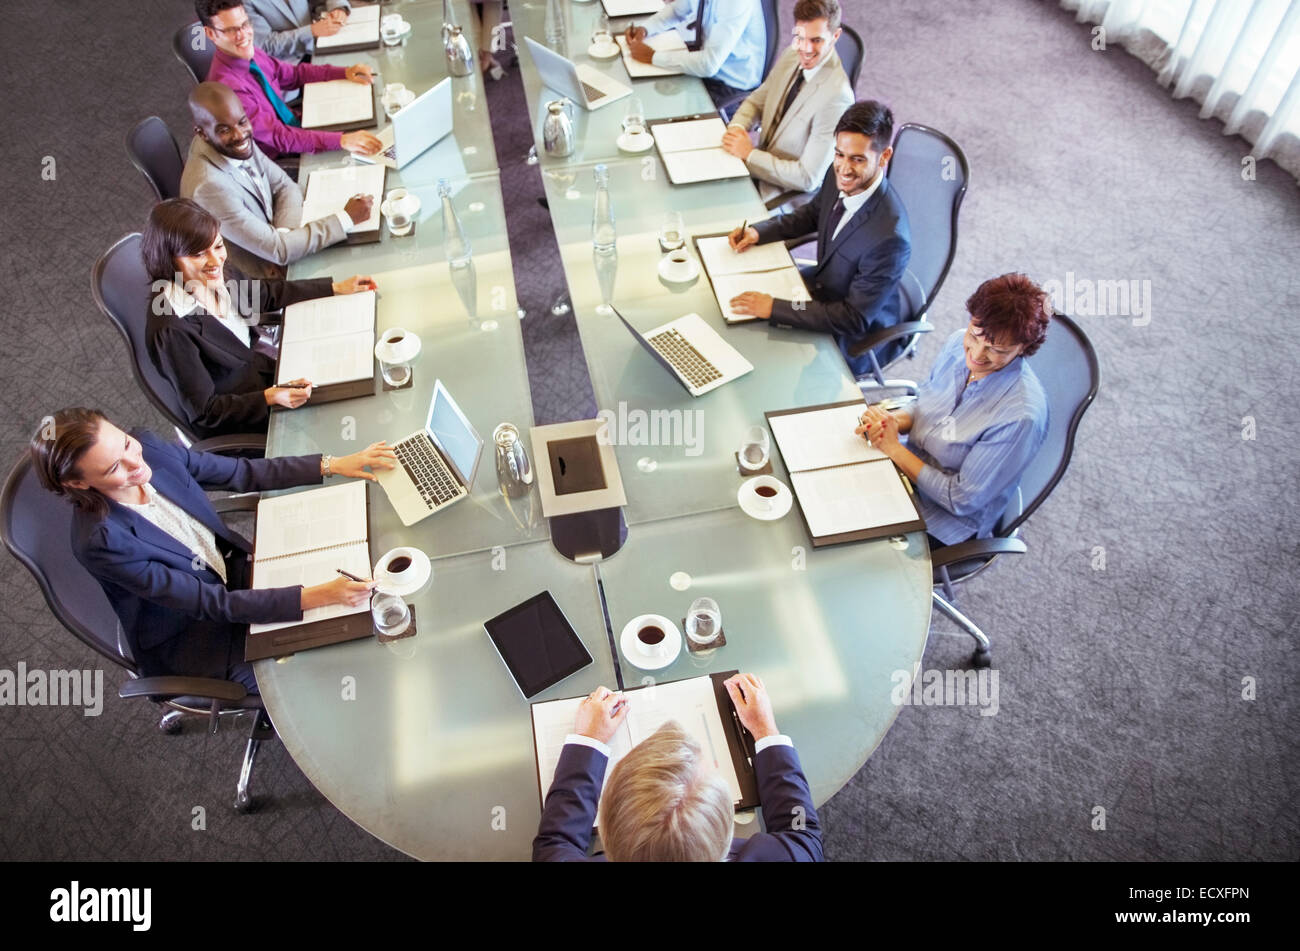 Gruppe von Geschäftsleuten am Konferenztisch betrachten Vorsitzender sitzen Stockfoto